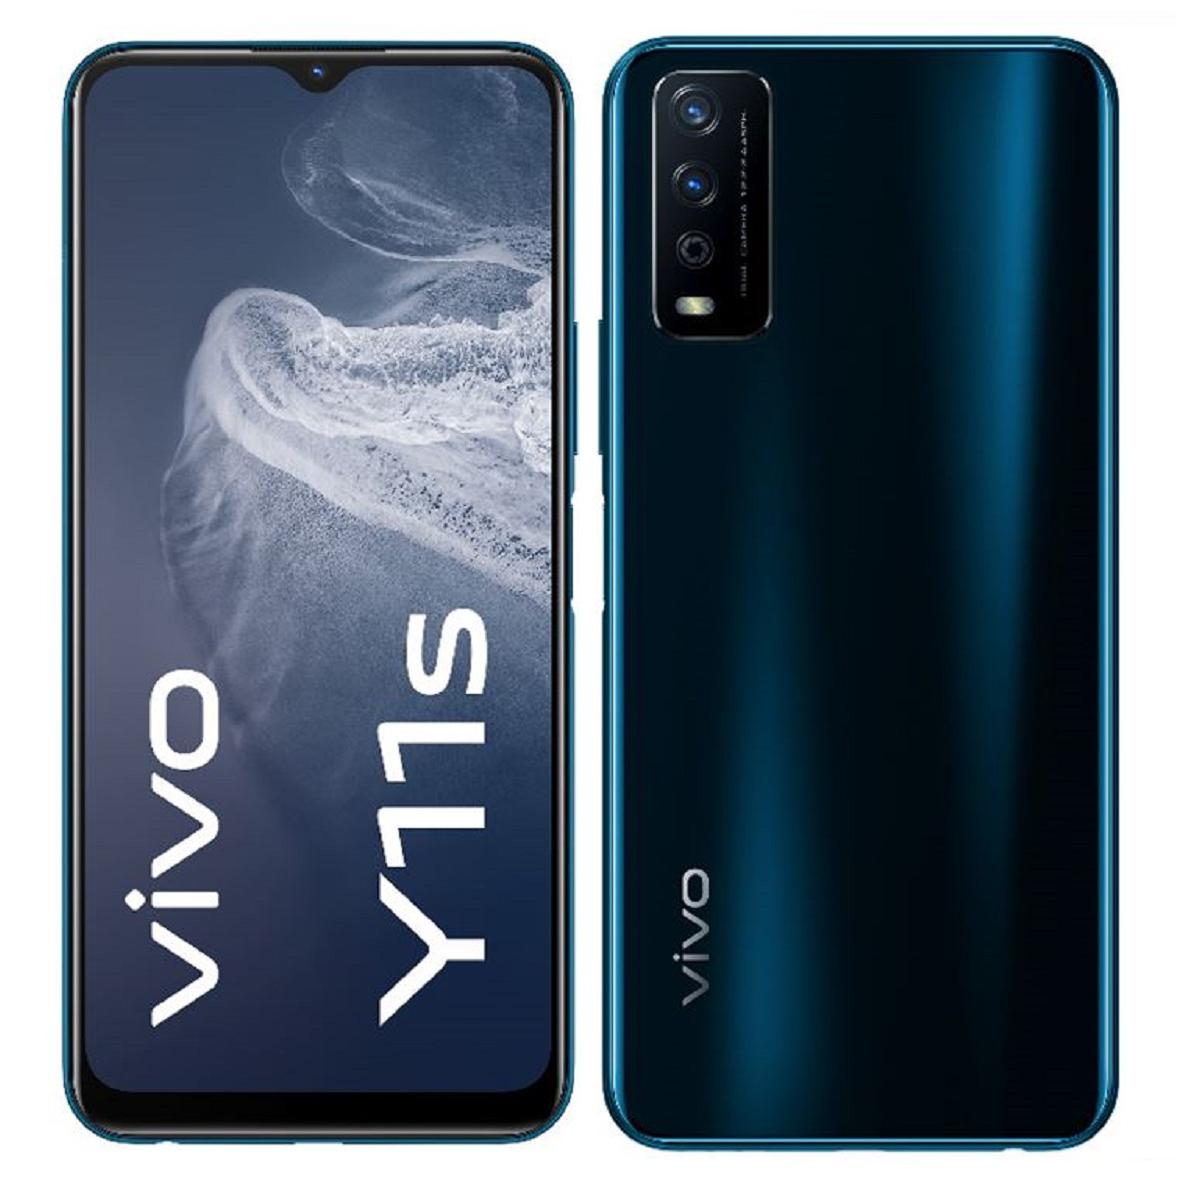 Vivo - Y11s 32 Go Noir - Smartphone Android